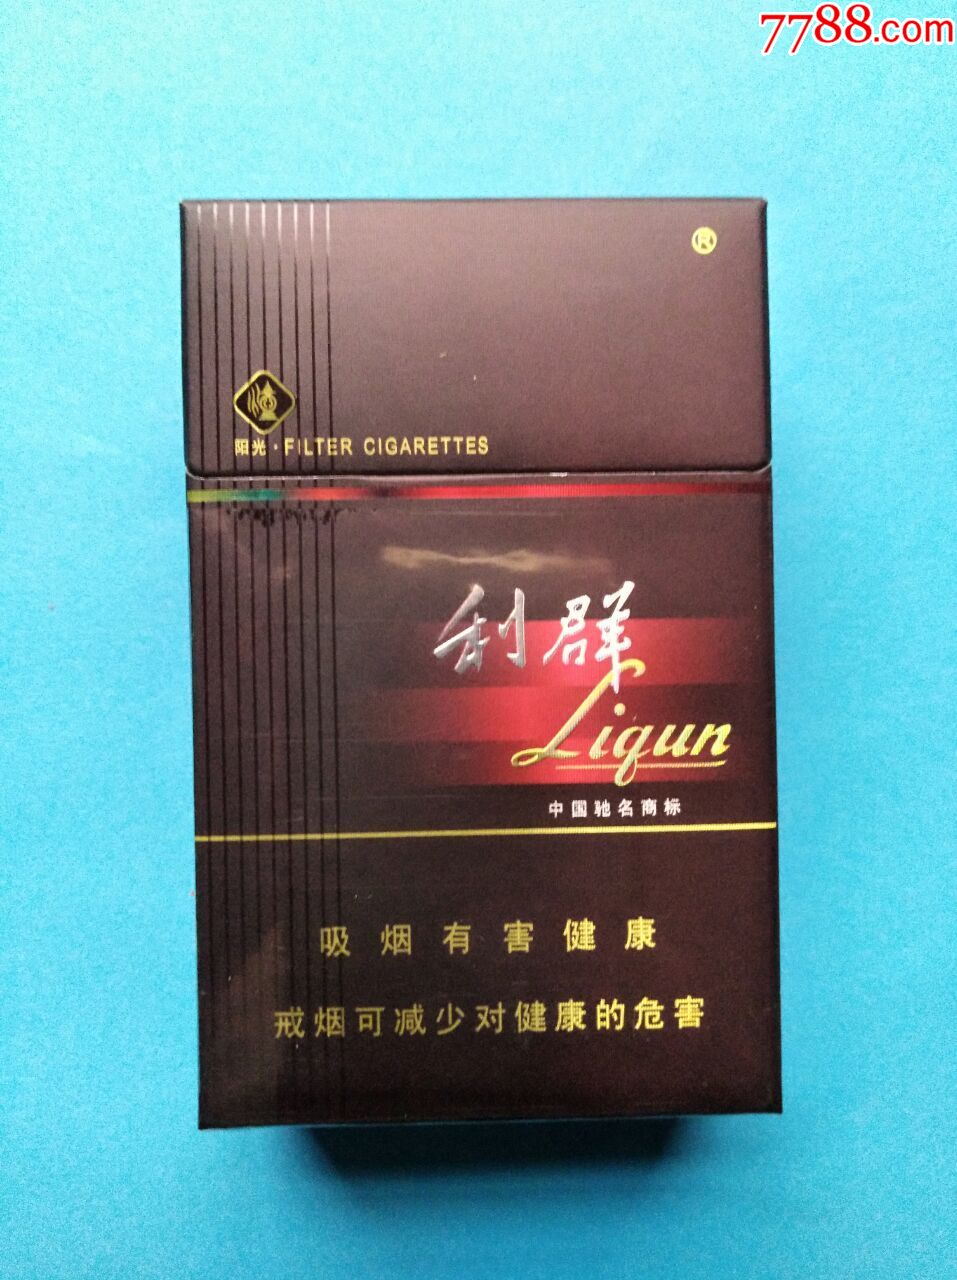 利群香烟阳光硬盒图片